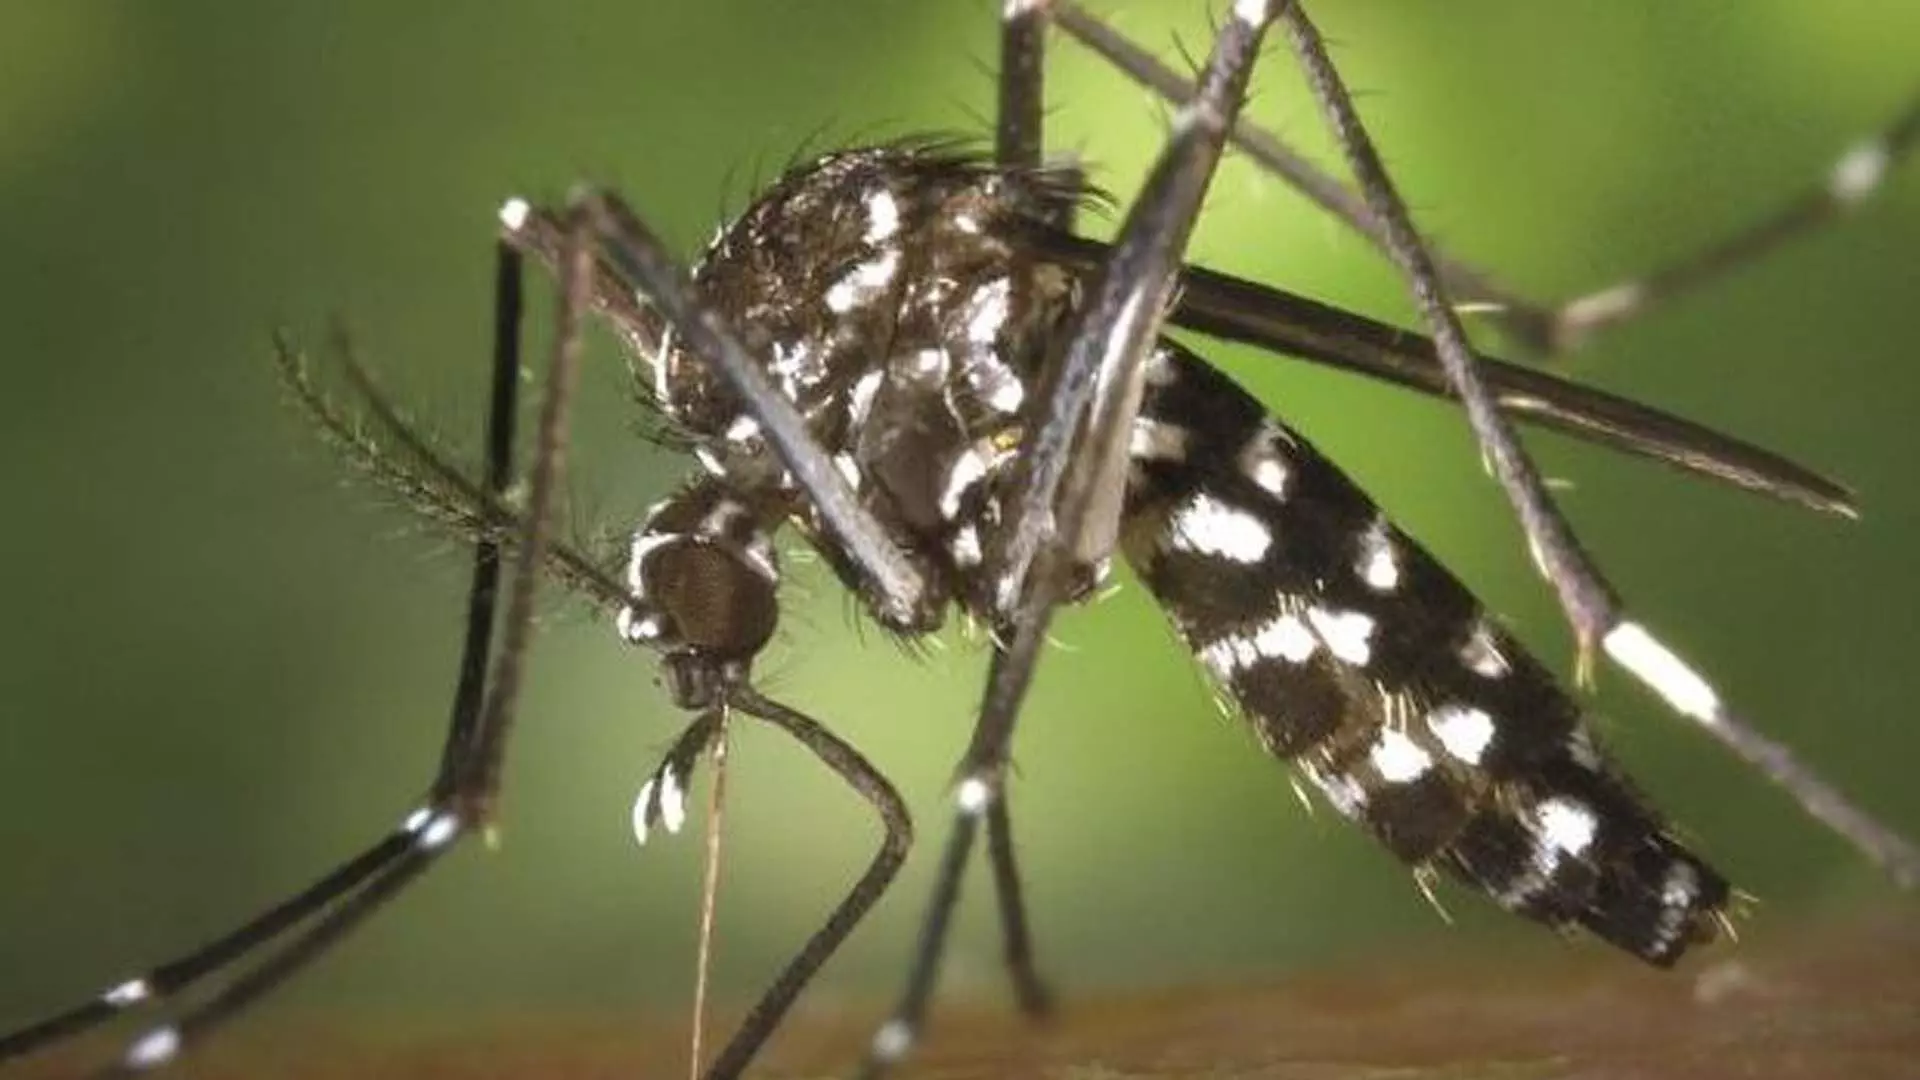 Rourkela News: सुंदरगढ़ में डेंगू के मामले बढ़ रहे राउरकेला सबसे ज्यादा प्रभावित